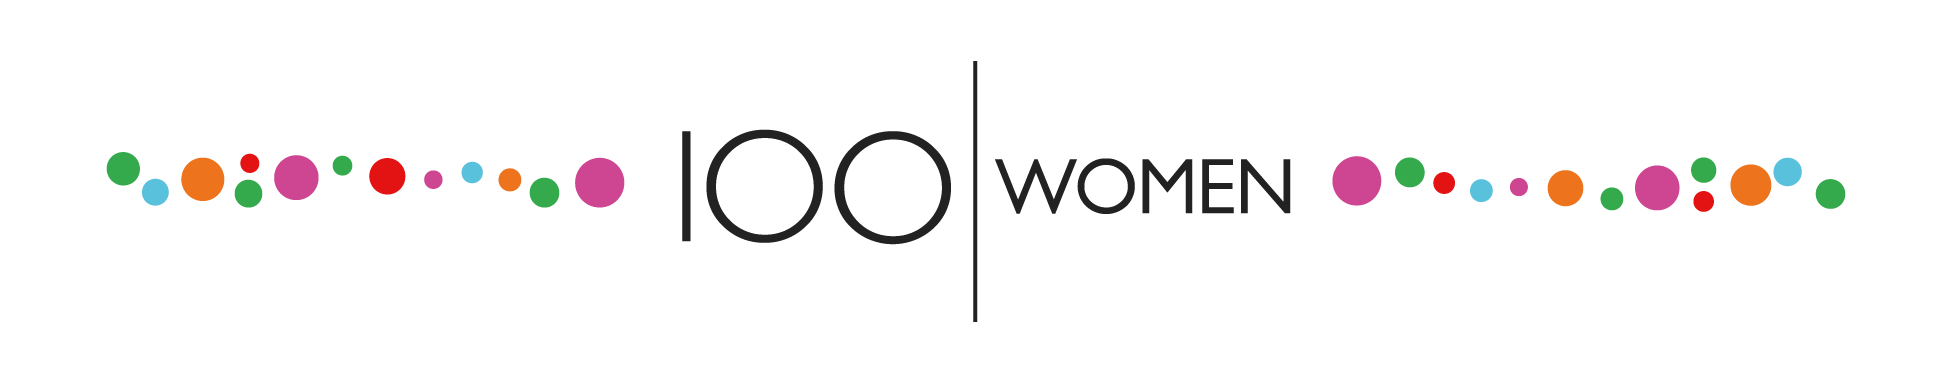 100 Mujeres